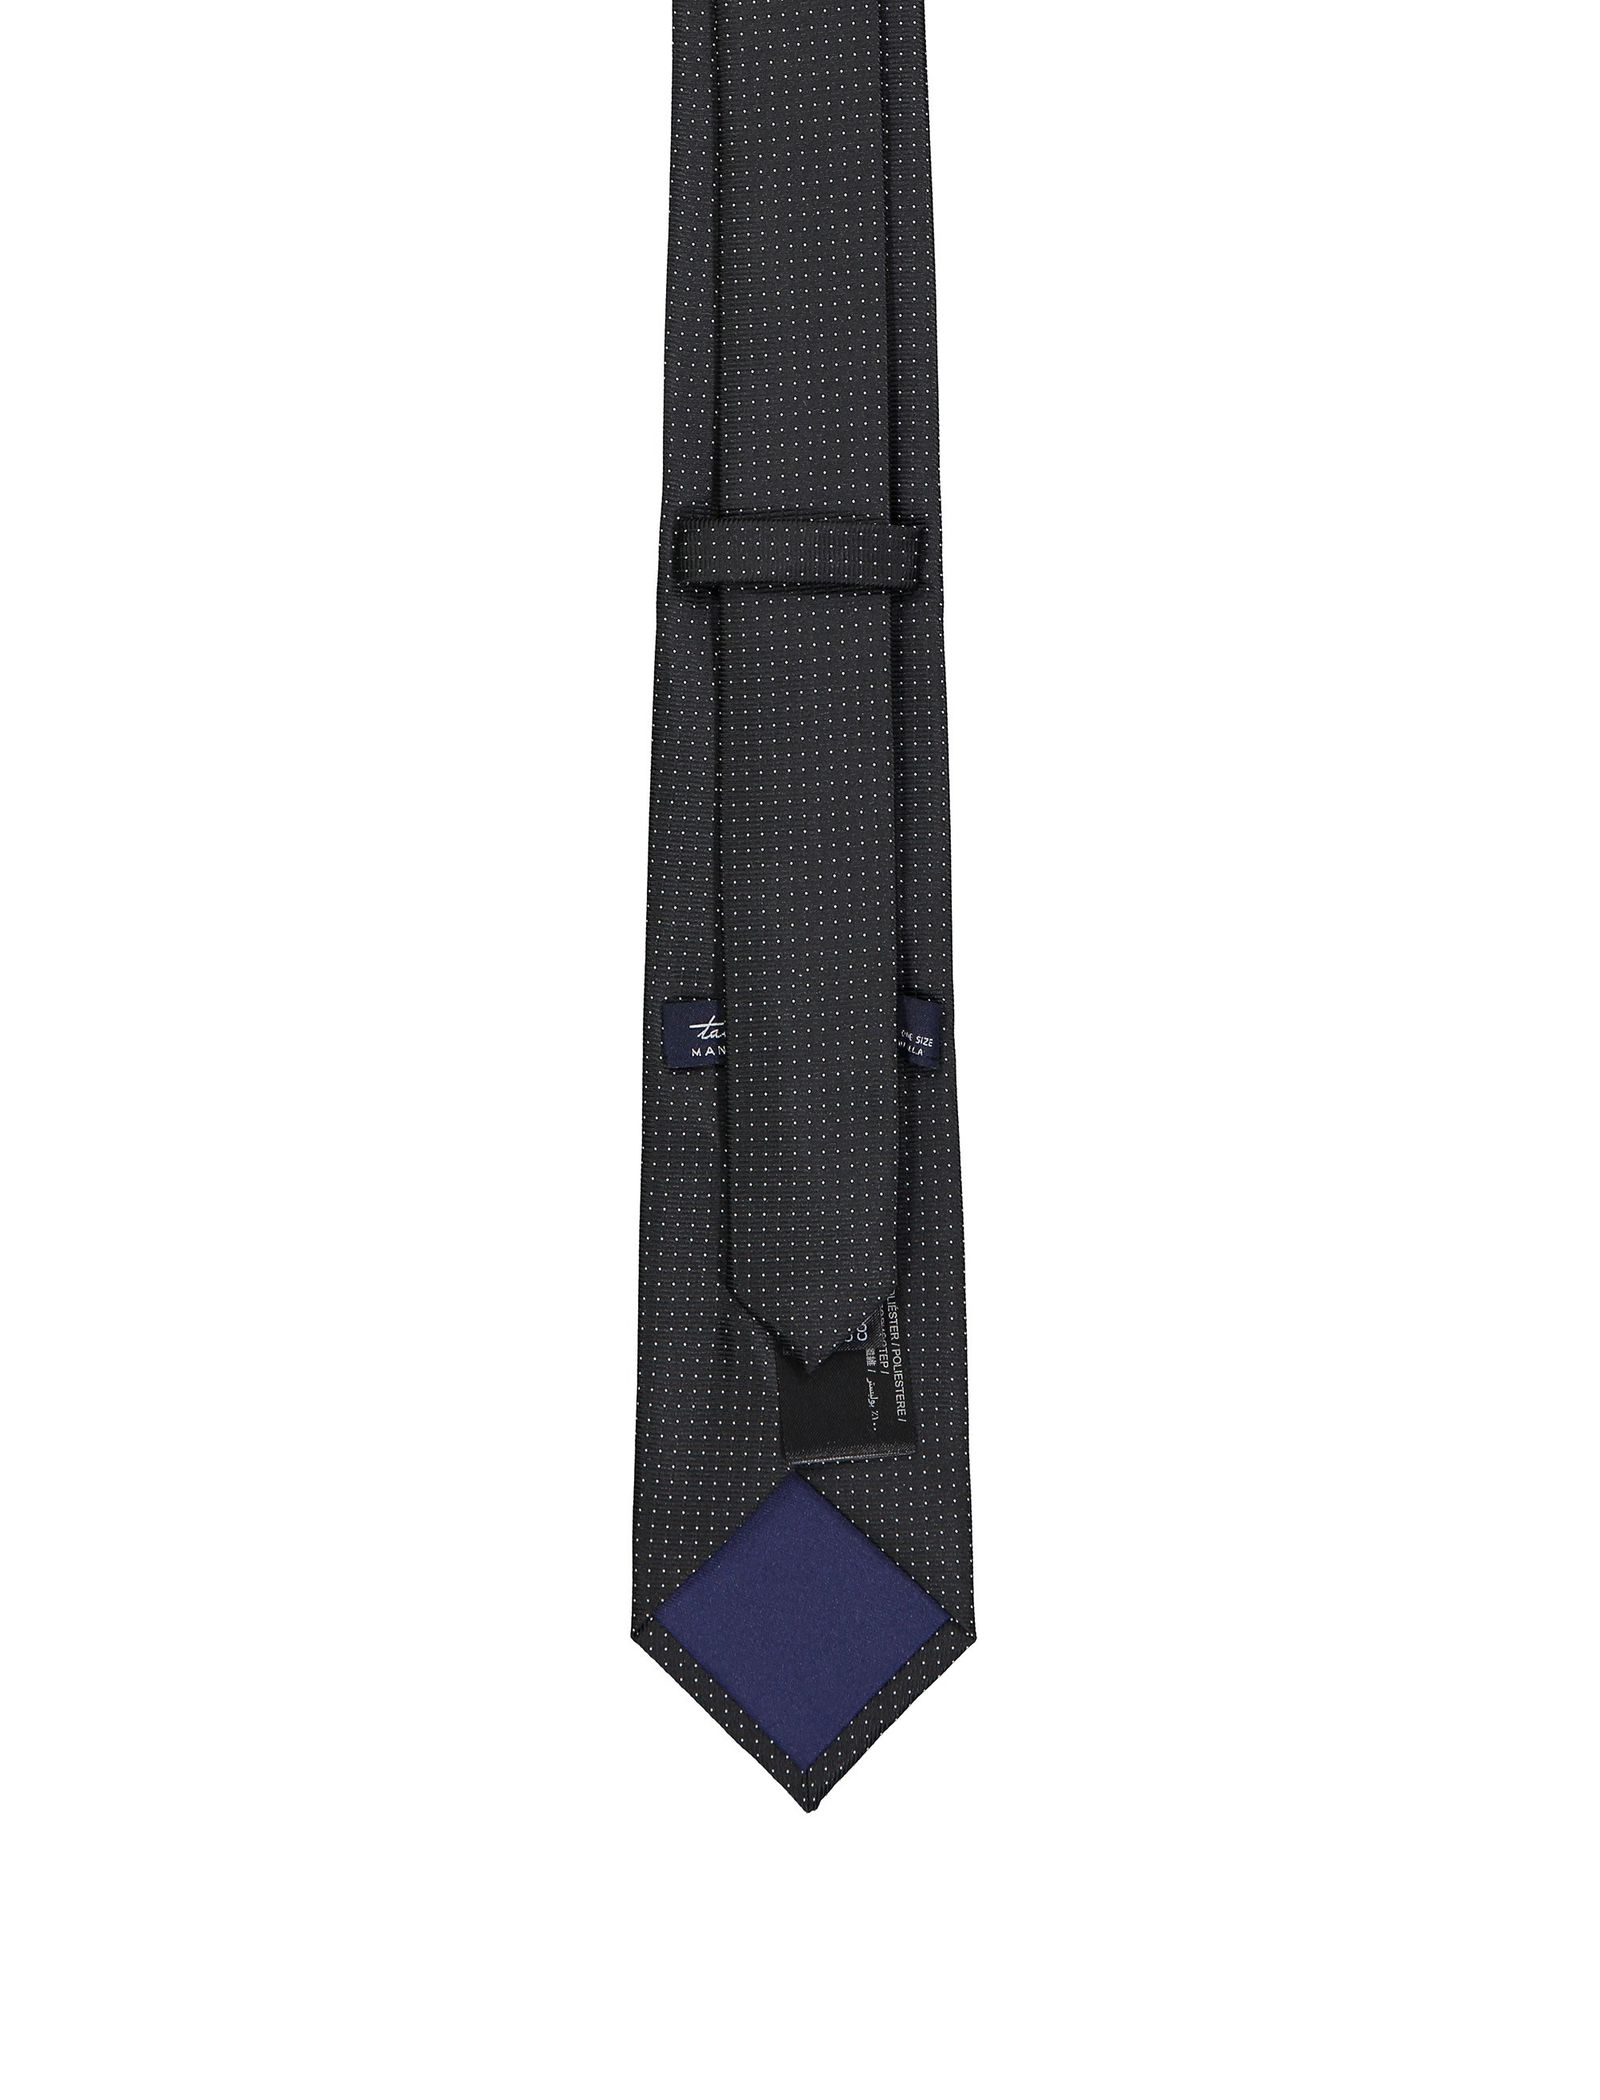 کراوات مانگو مدل 23033635 تک سایز - مشکی - 3